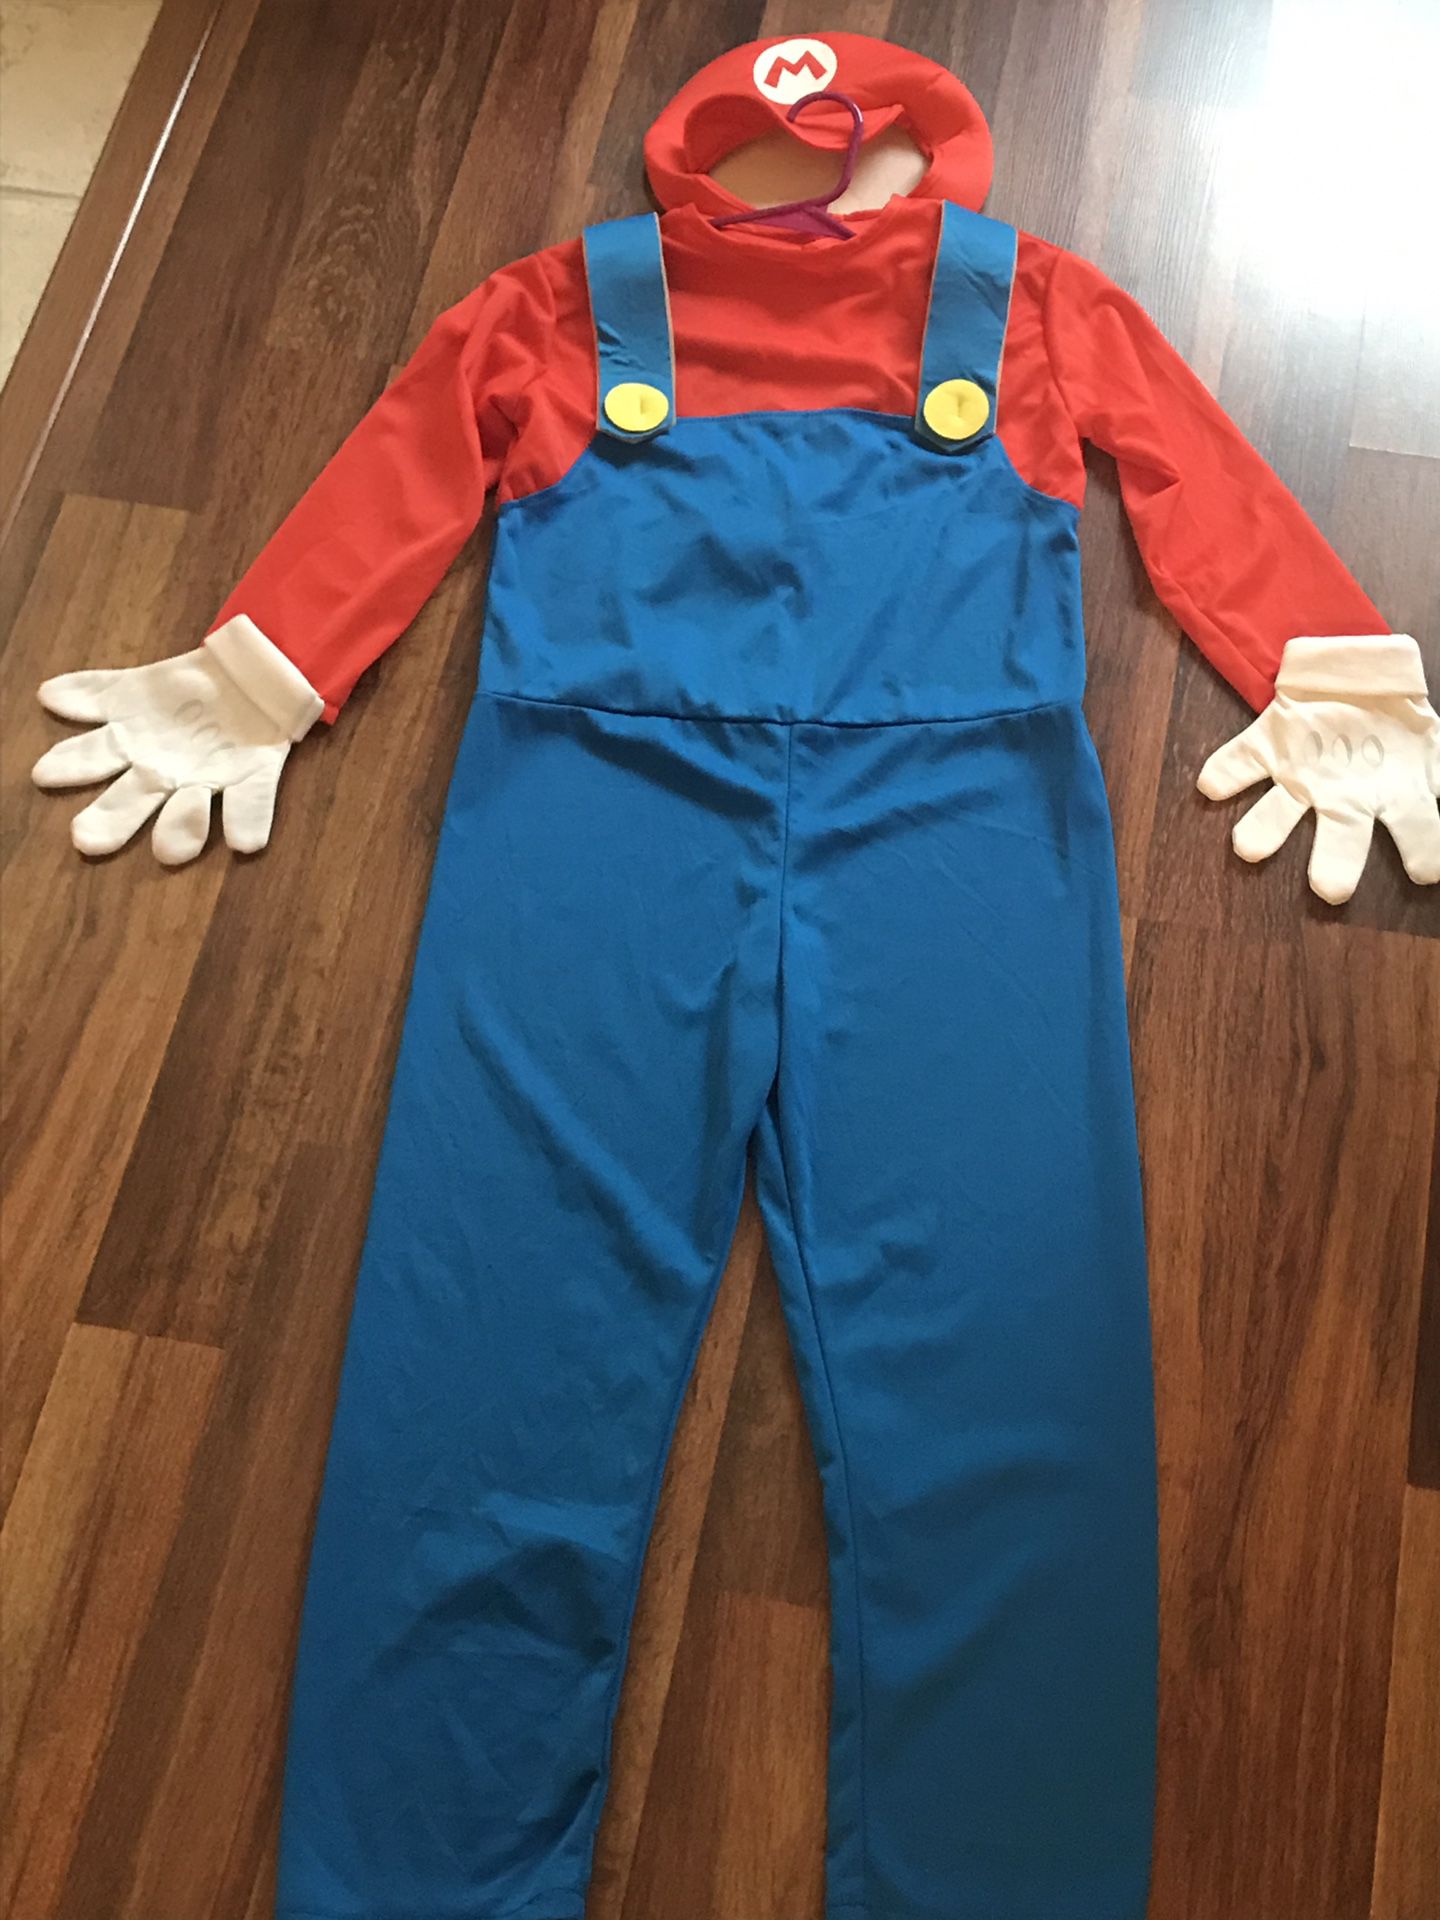 Super Mario costume kids large (10)